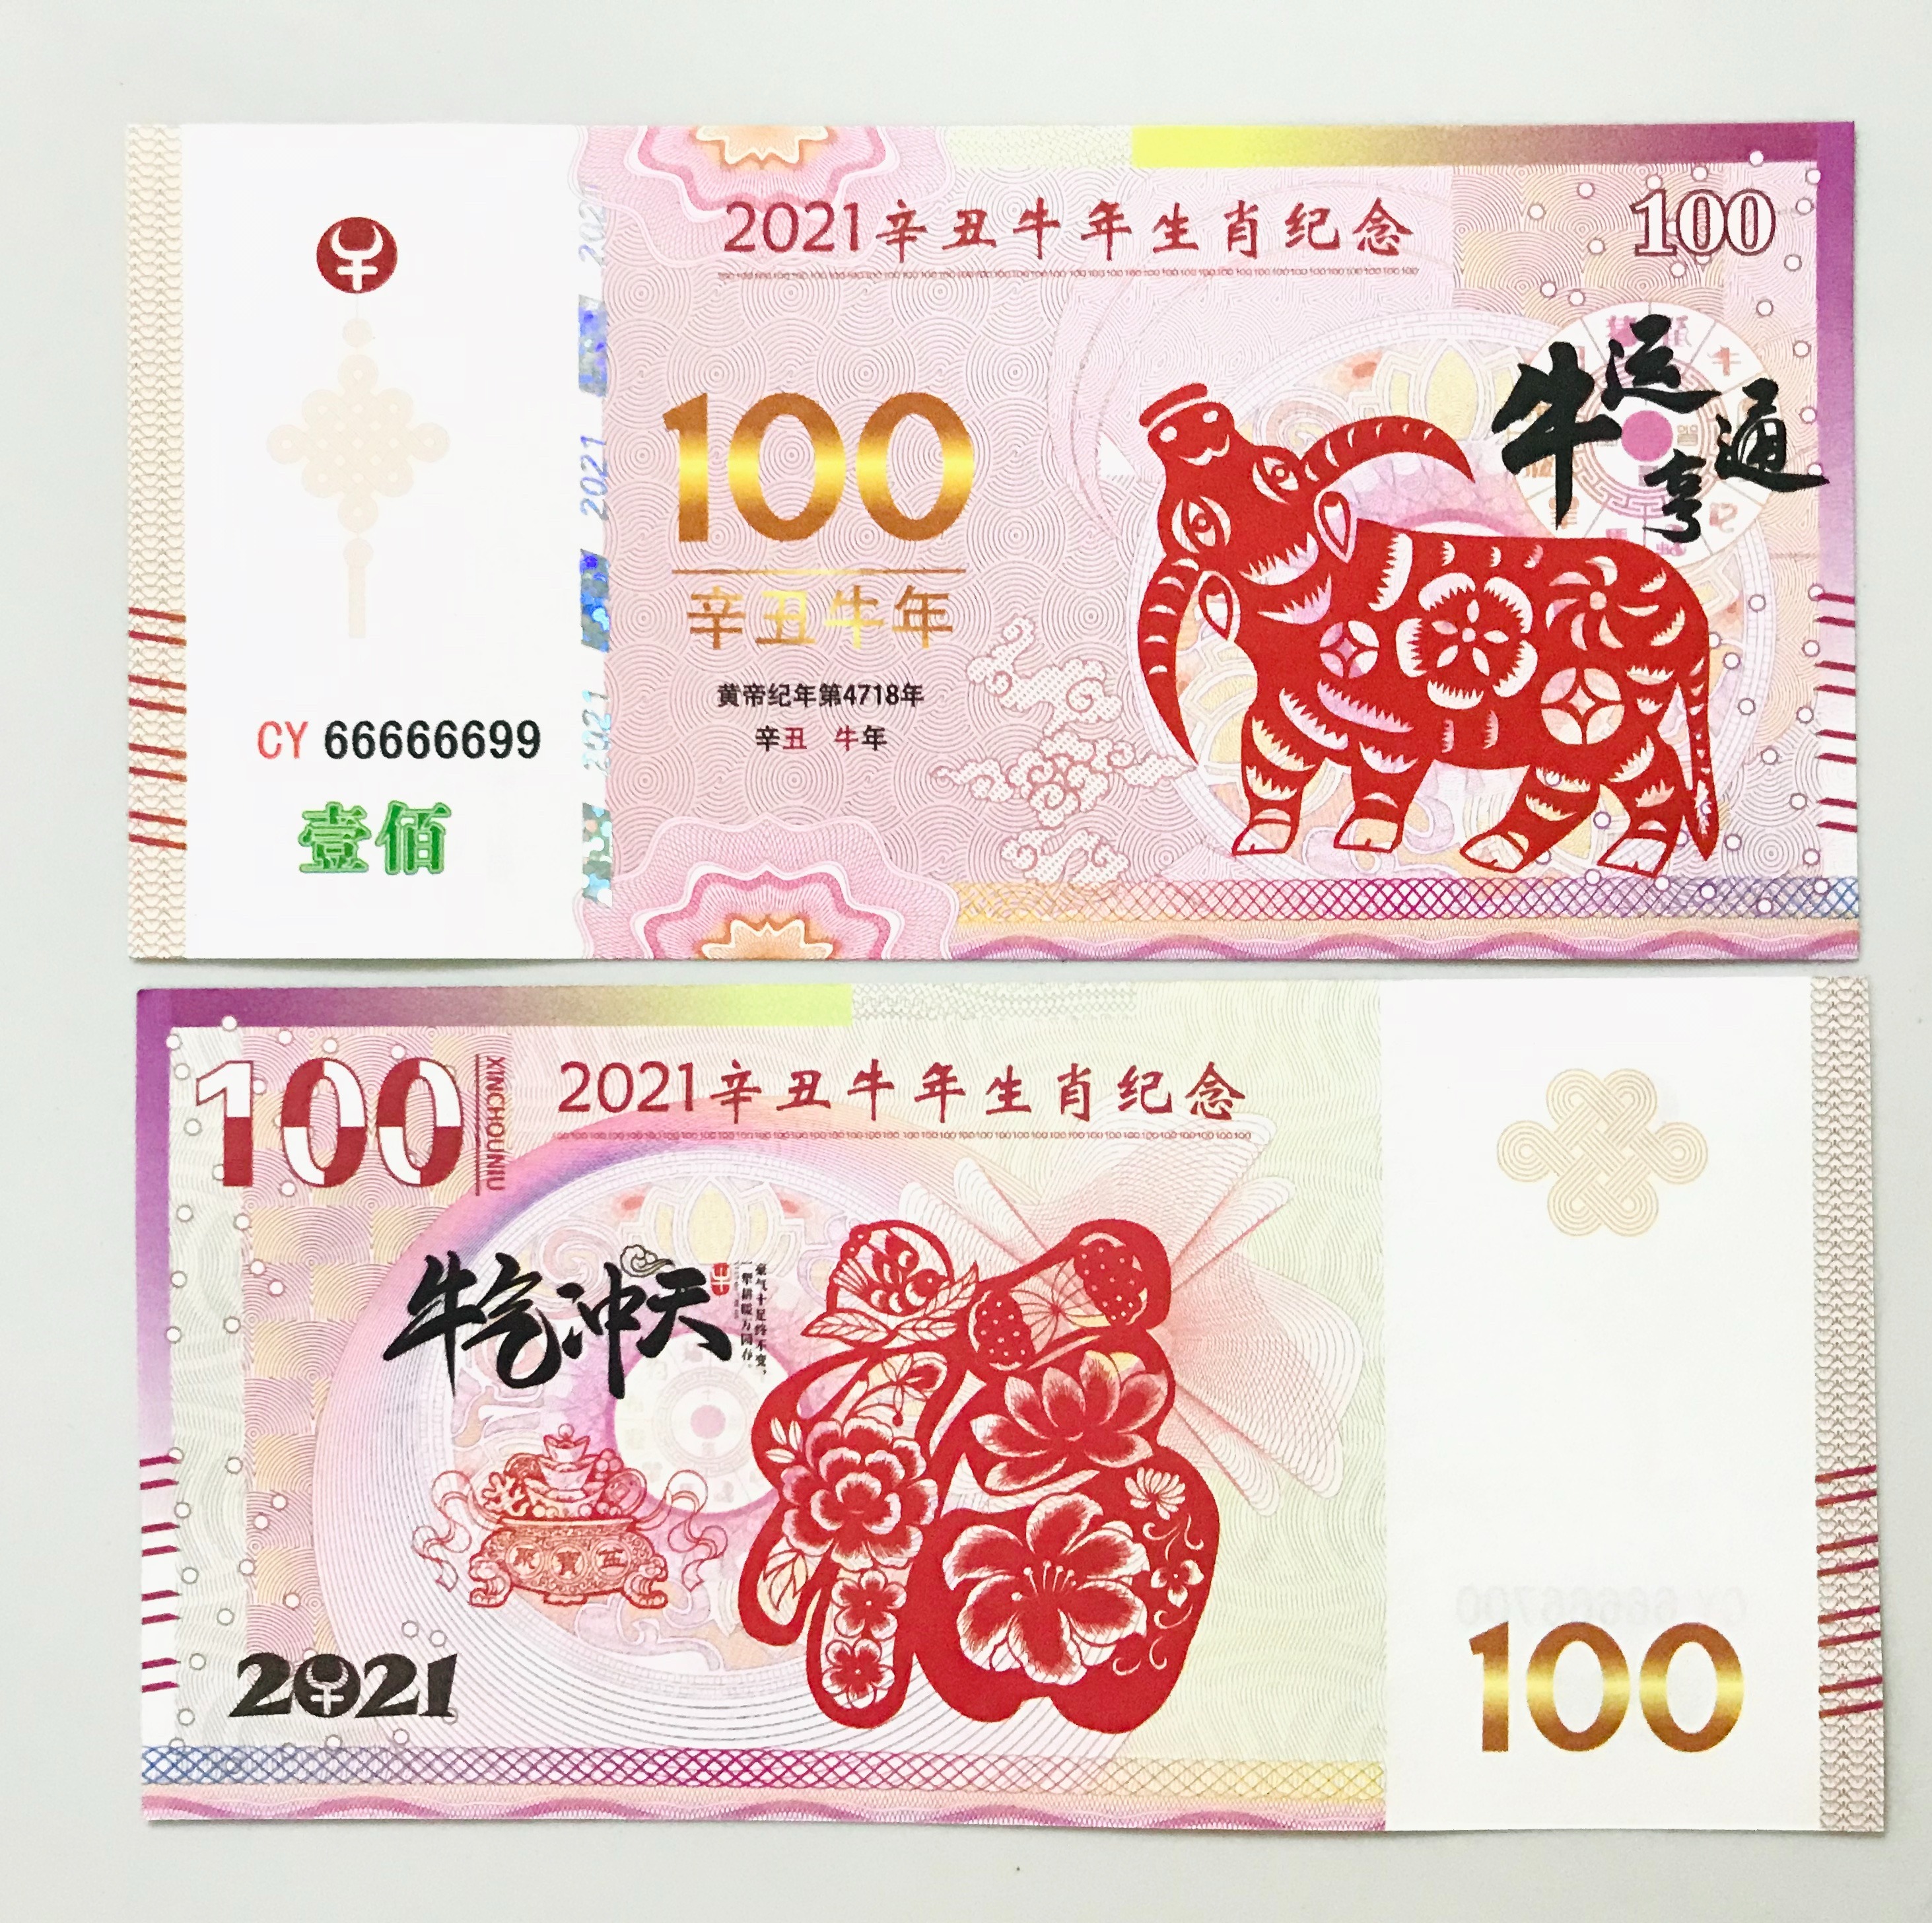 Hãy ngắm nhìn đồng tiền 100 dola Macao và cảm nhận sự sang trọng và đẳng cấp của thành phố đánh bạc nổi tiếng này. Với màu sắc đậm chất Châu Á, đồng tiền không chỉ là phương tiện thanh toán mà còn là biểu tượng cho phong cách sống đẳng cấp và xa hoa.